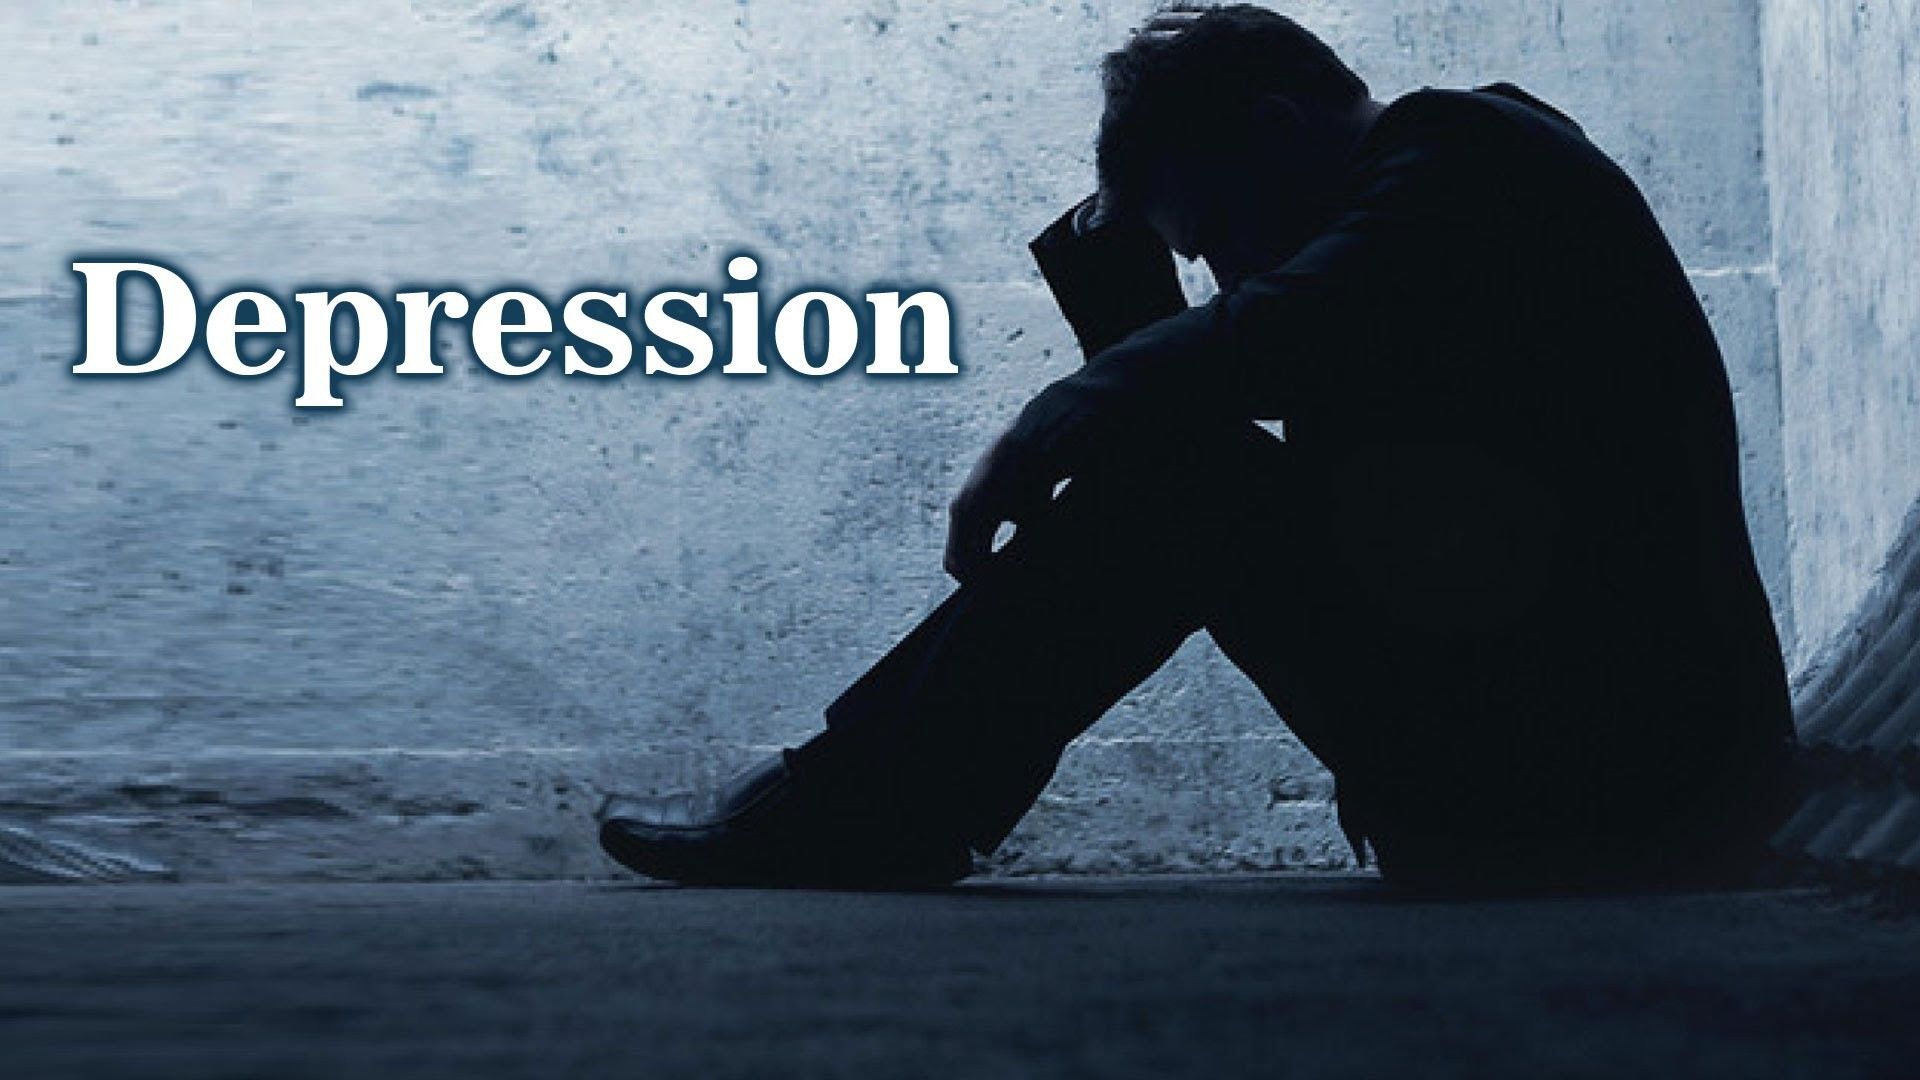 विश्व में 30 करोड़ लोग अवसाद से ग्रस्त: डब्ल्यूएचओ